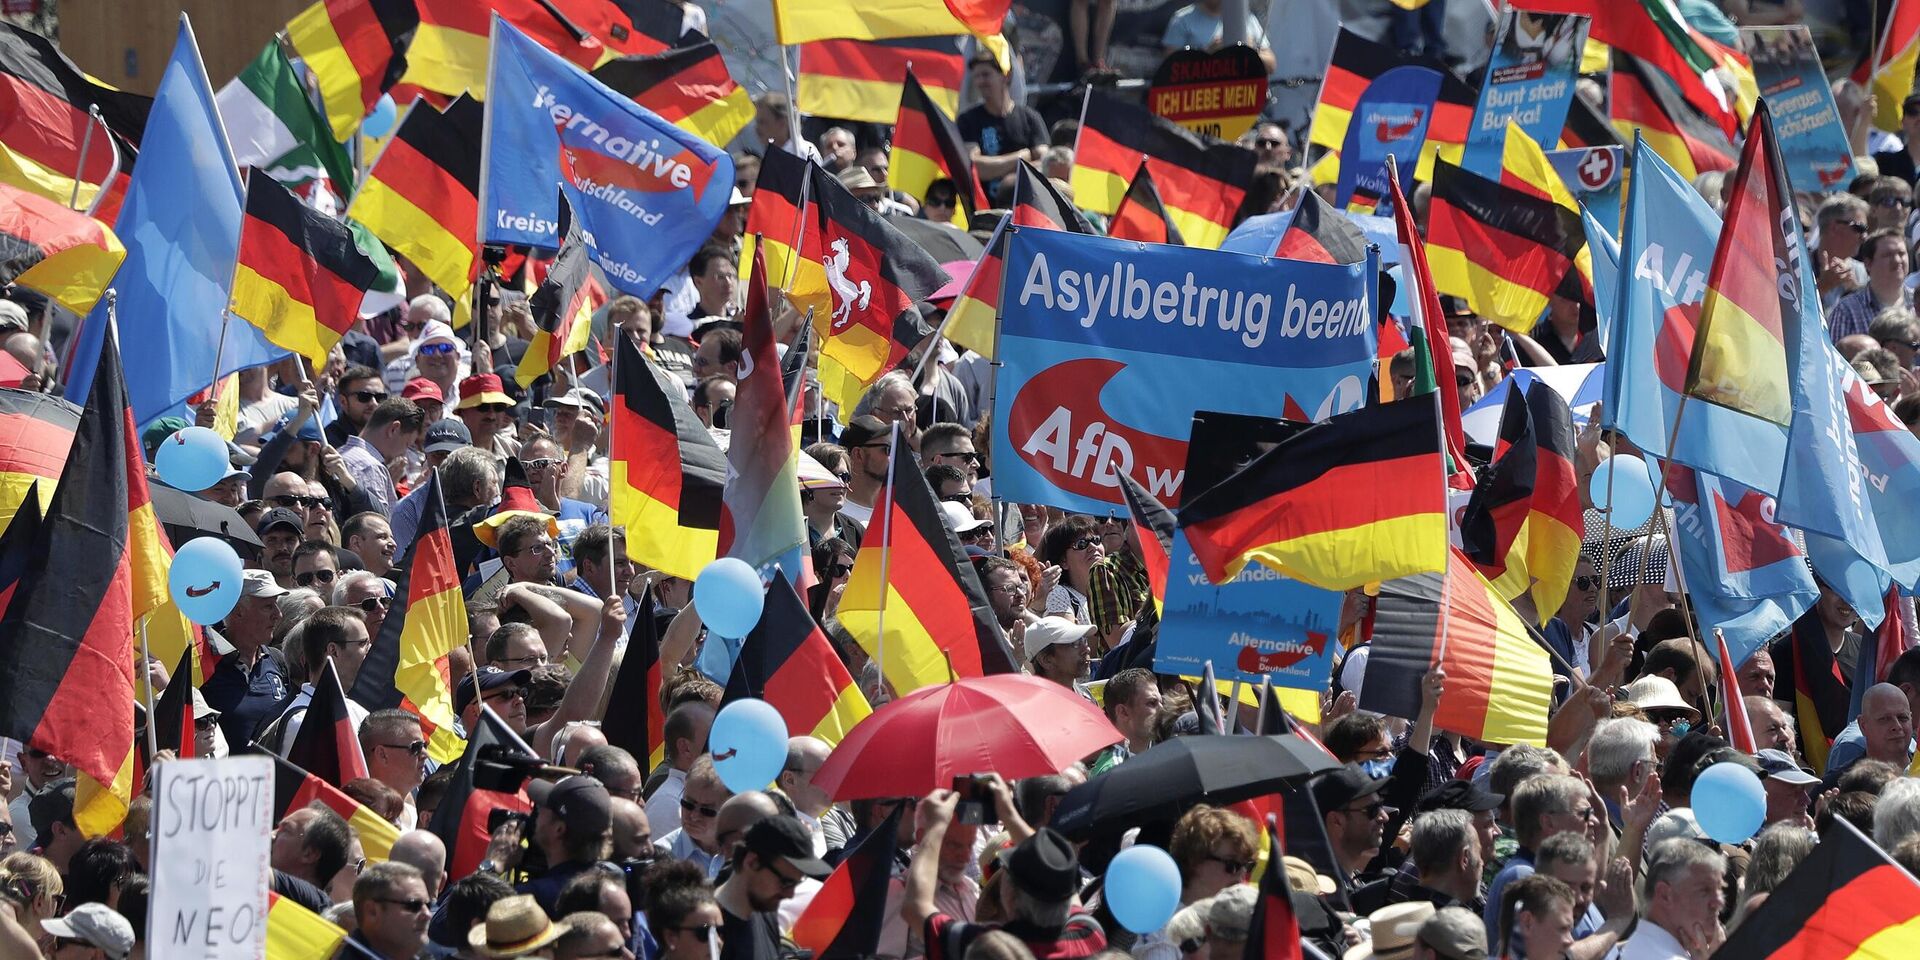 Сторонники партии Альтернатива для Германии на митинге в Берлине, Германия. 27 мая 2018 года - ИноСМИ, 1920, 23.10.2023